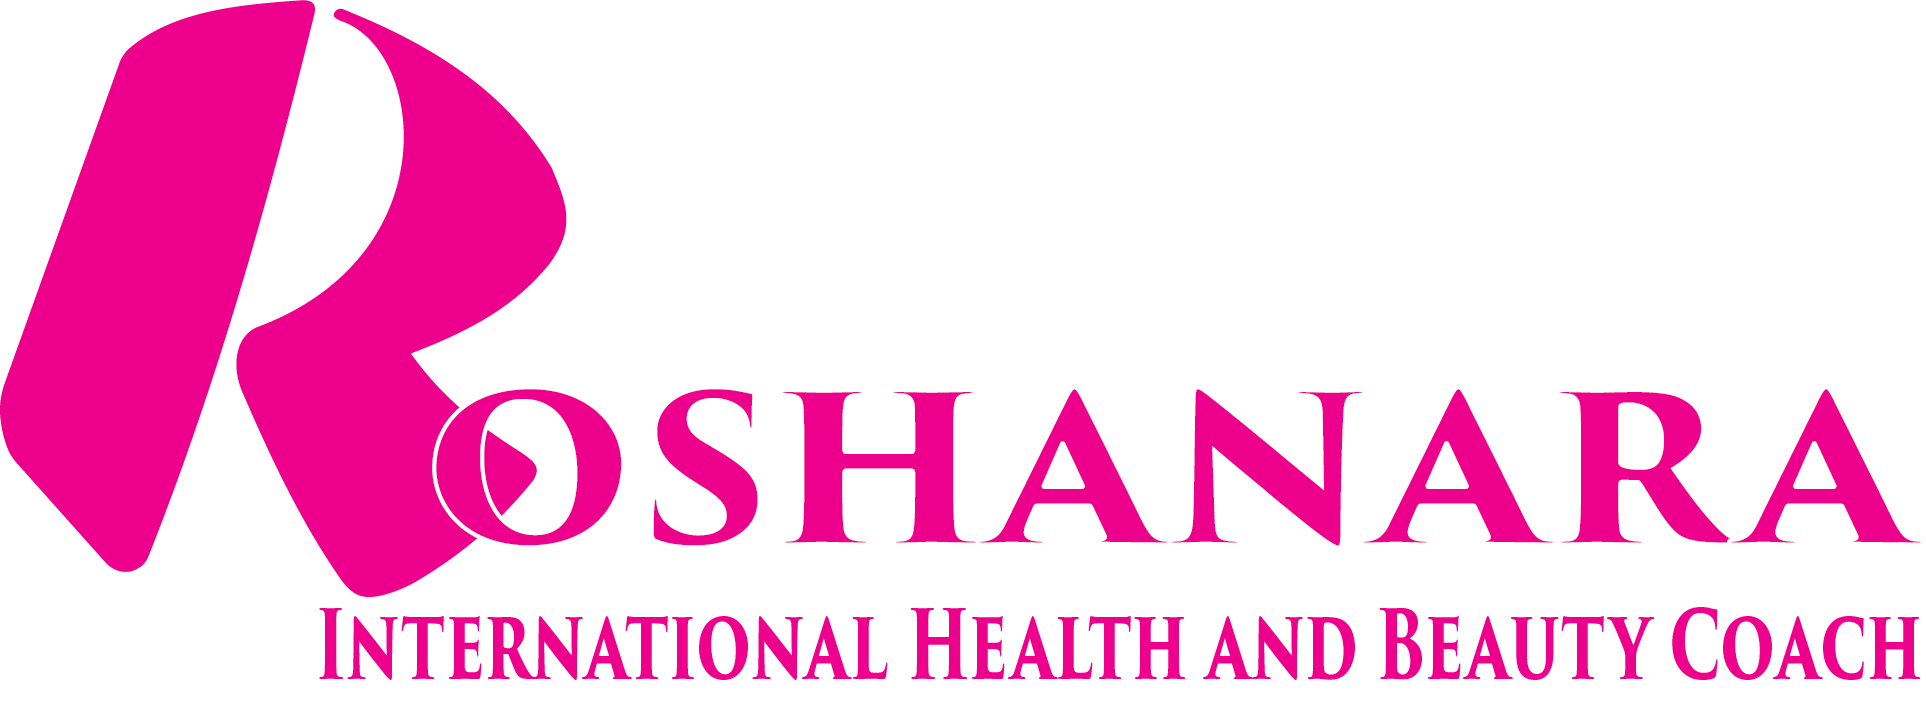 roshanara-logo